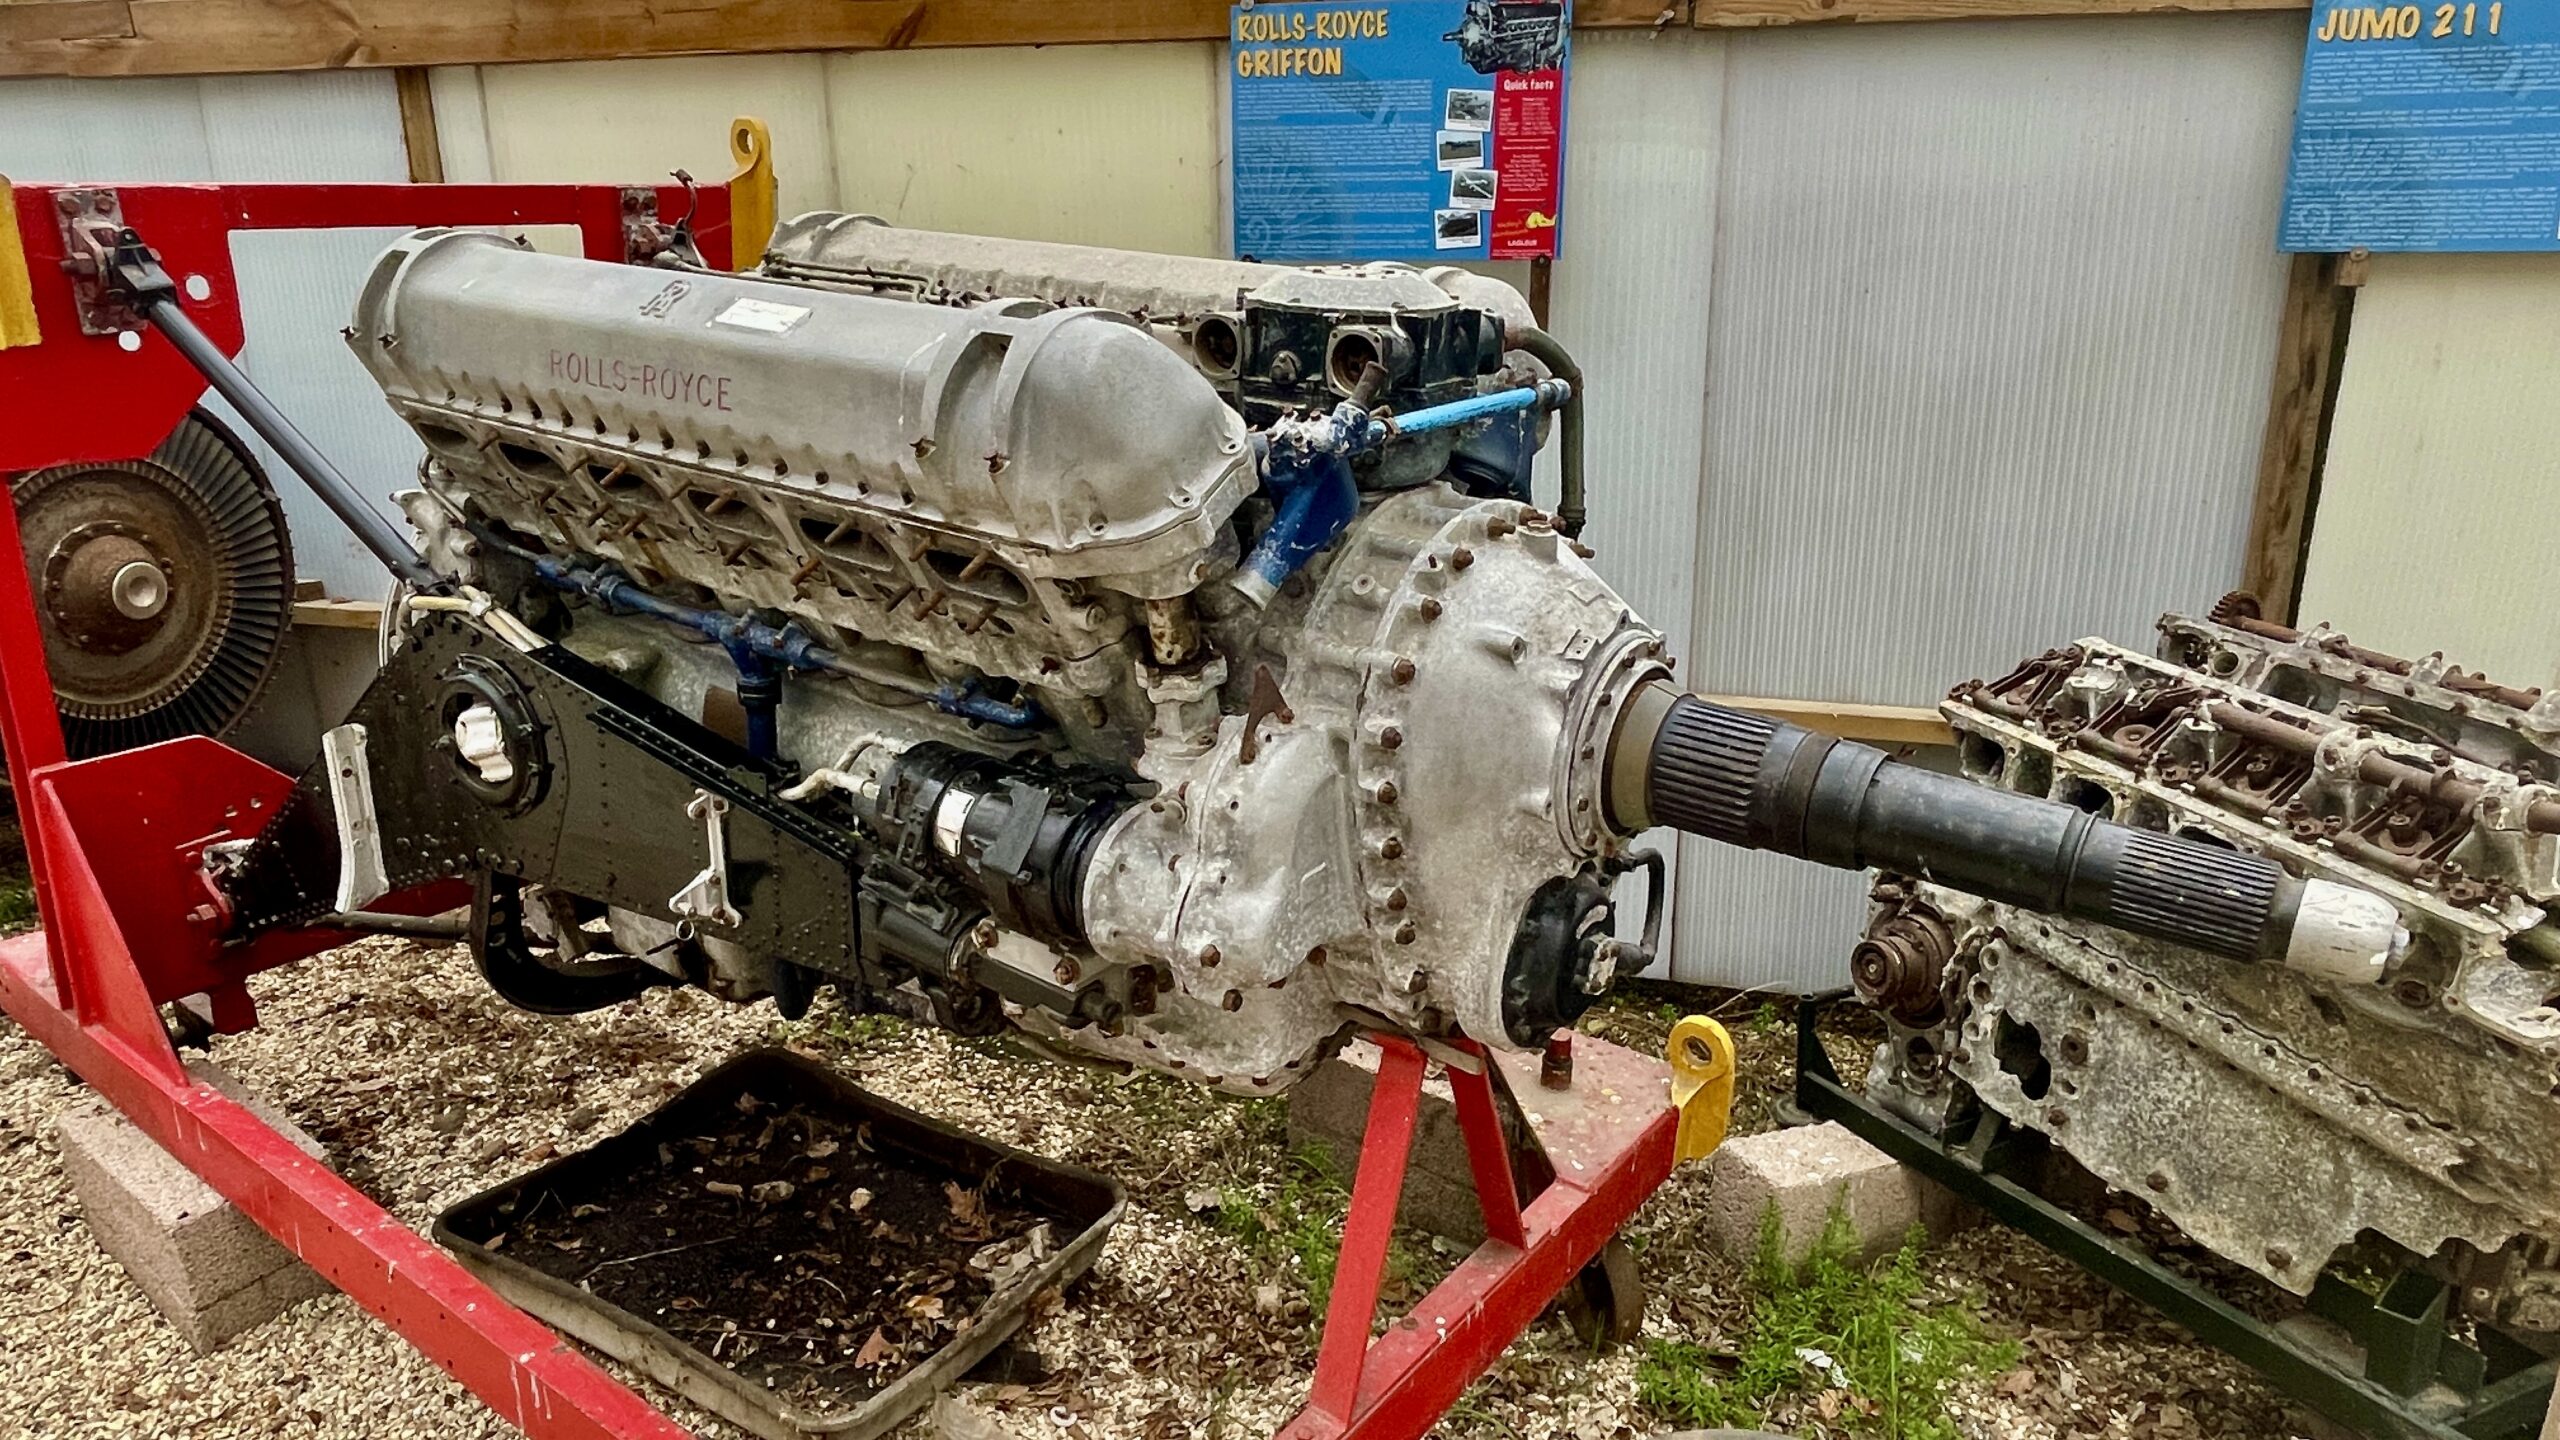 Rolls-Royce Griffon Engine